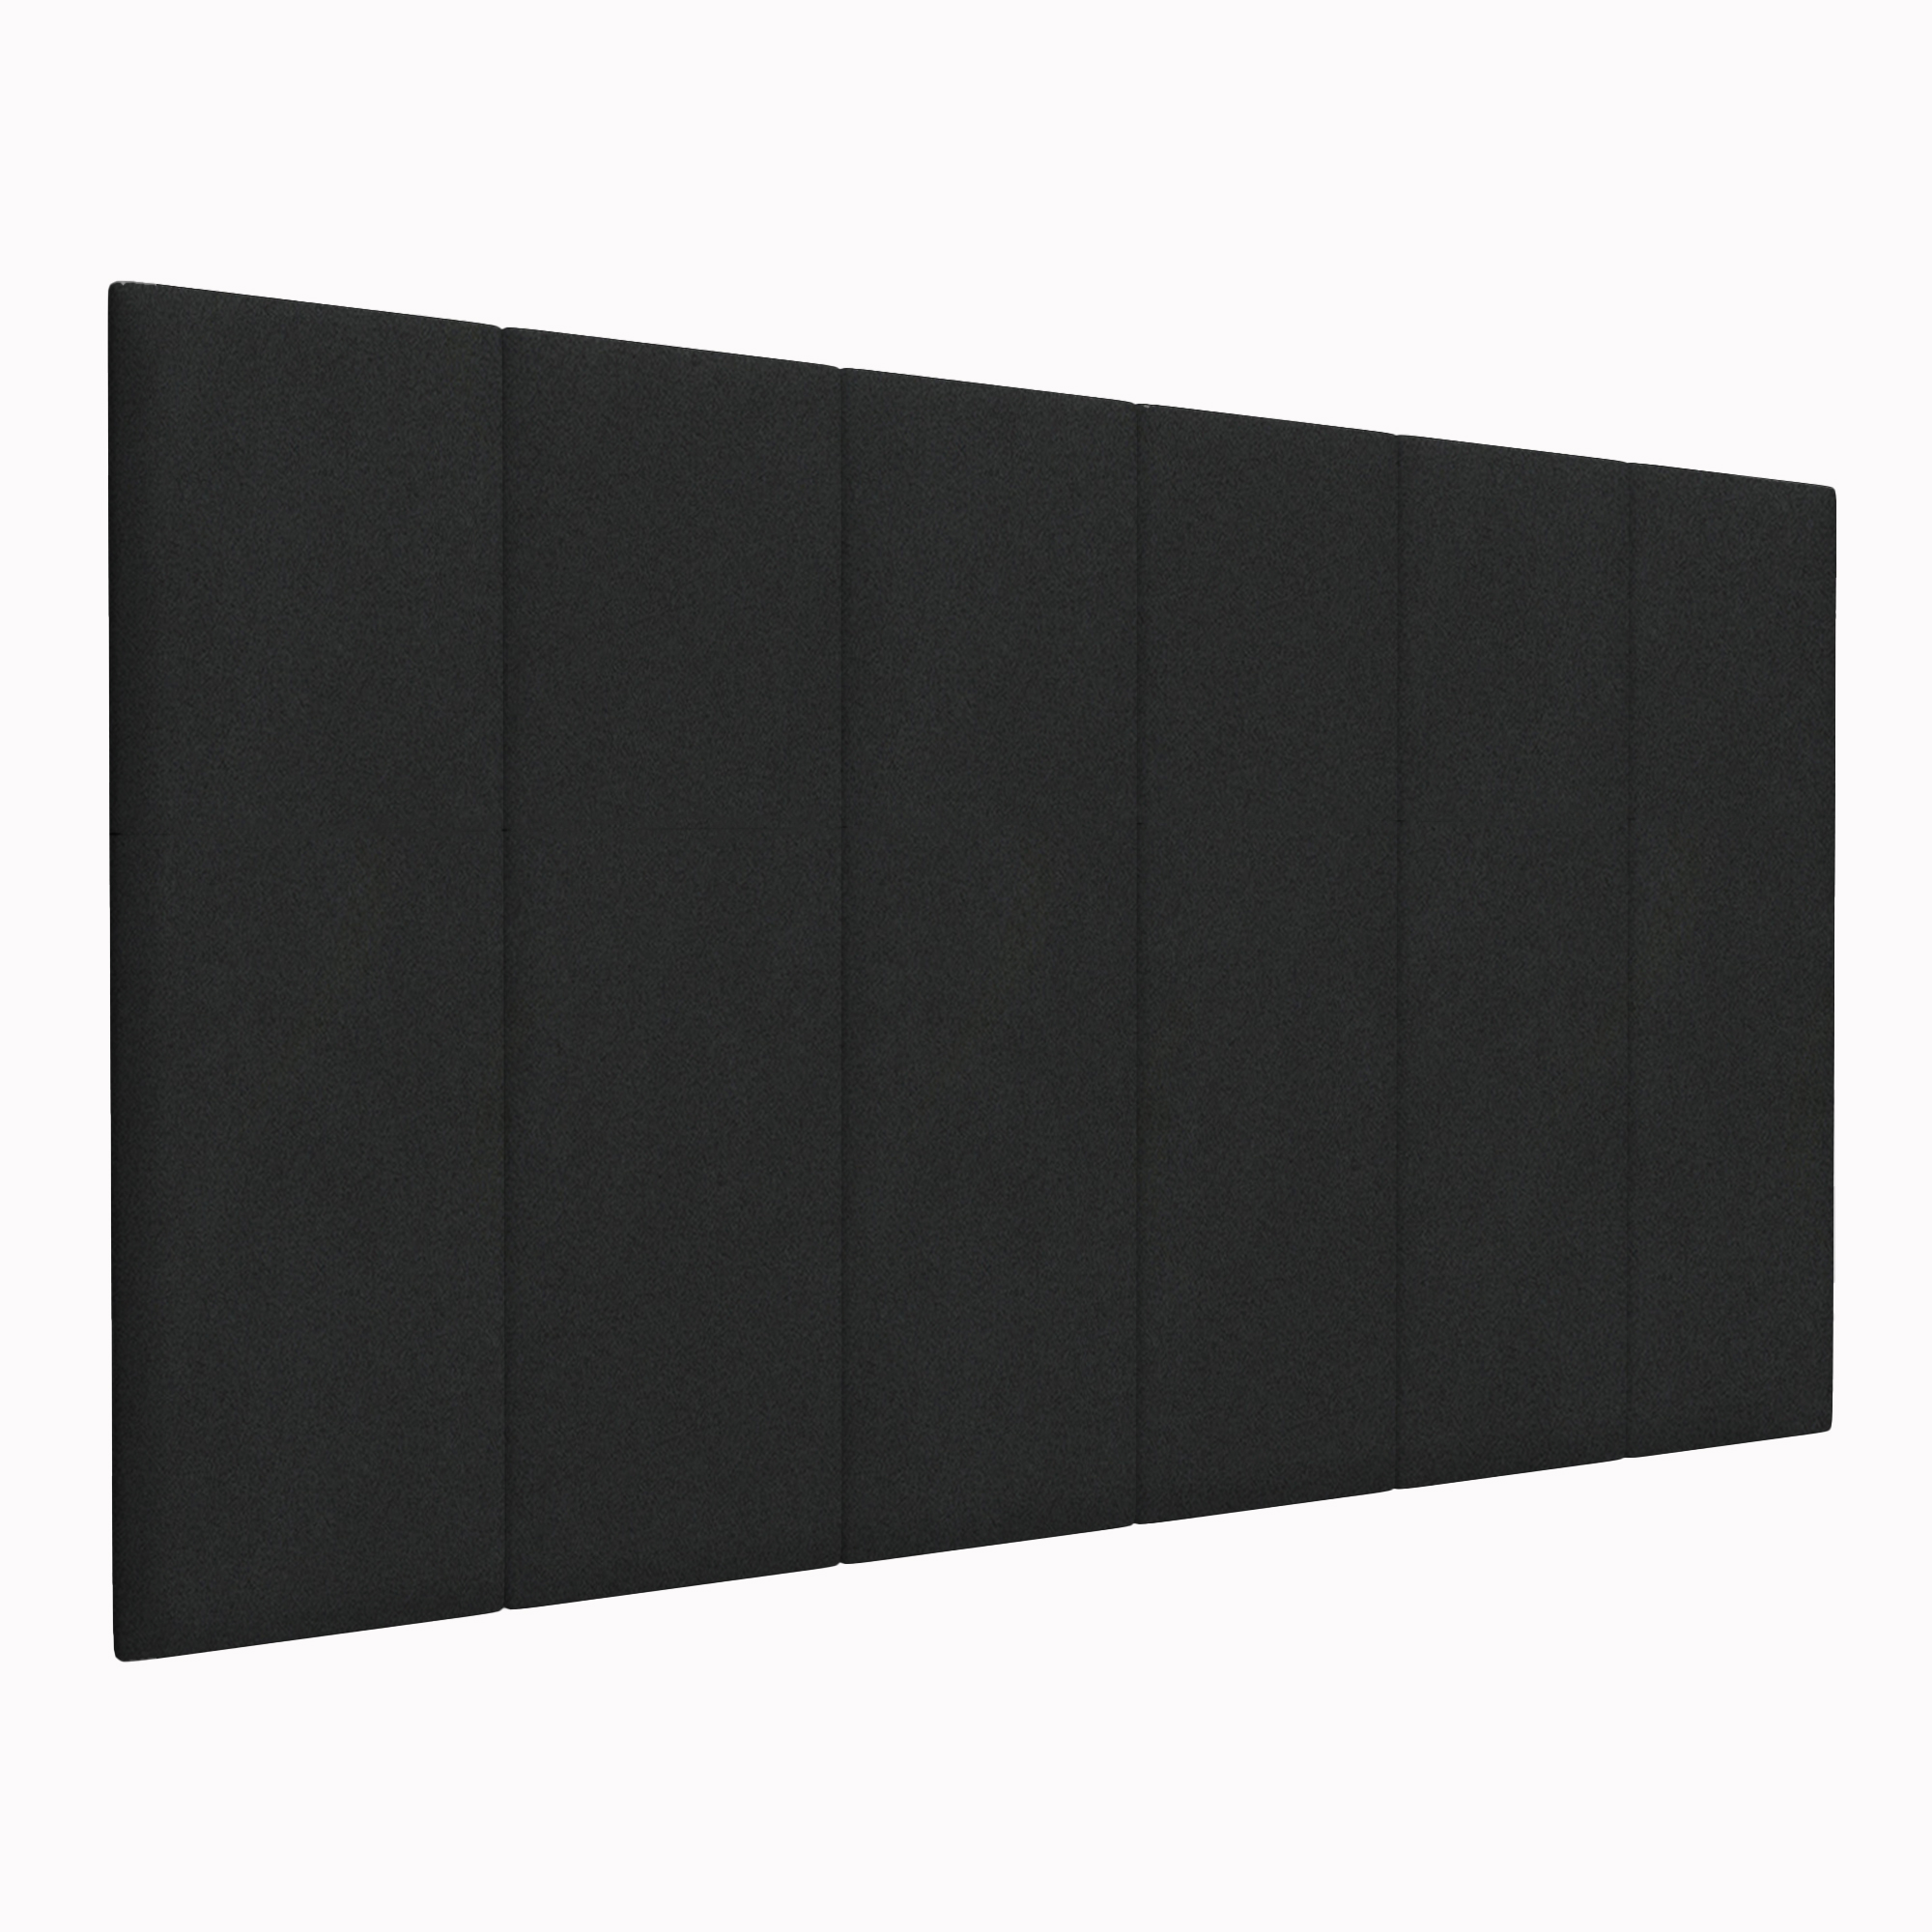 Шумо звукоизоляционные мягкие панели Velour Black 30х100 см 4 шт.